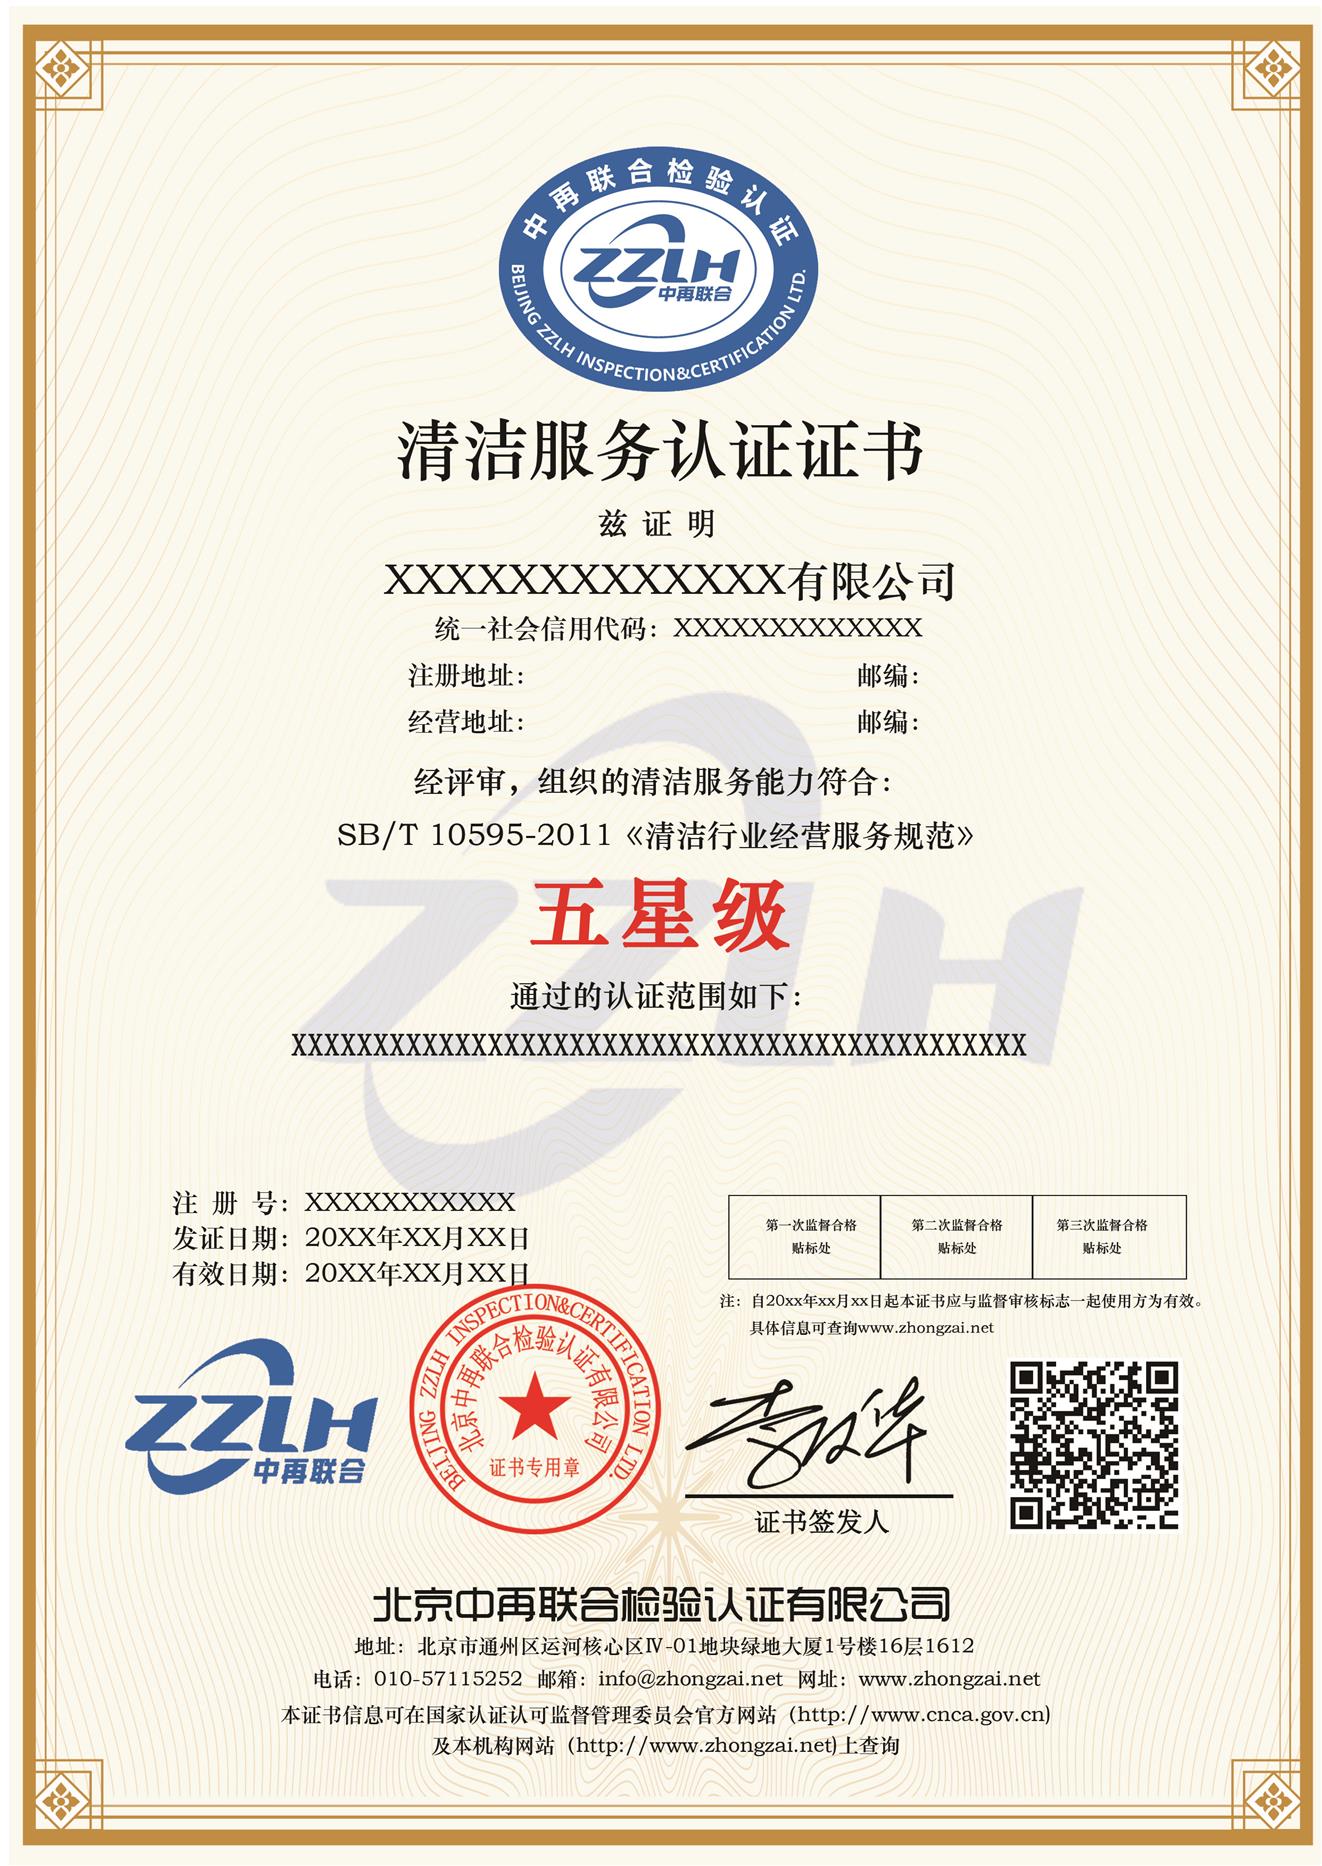 清洁环卫服务认证 企业获得清洁服务认证后的注意事项 郑州清洁服务认证中再联合认证